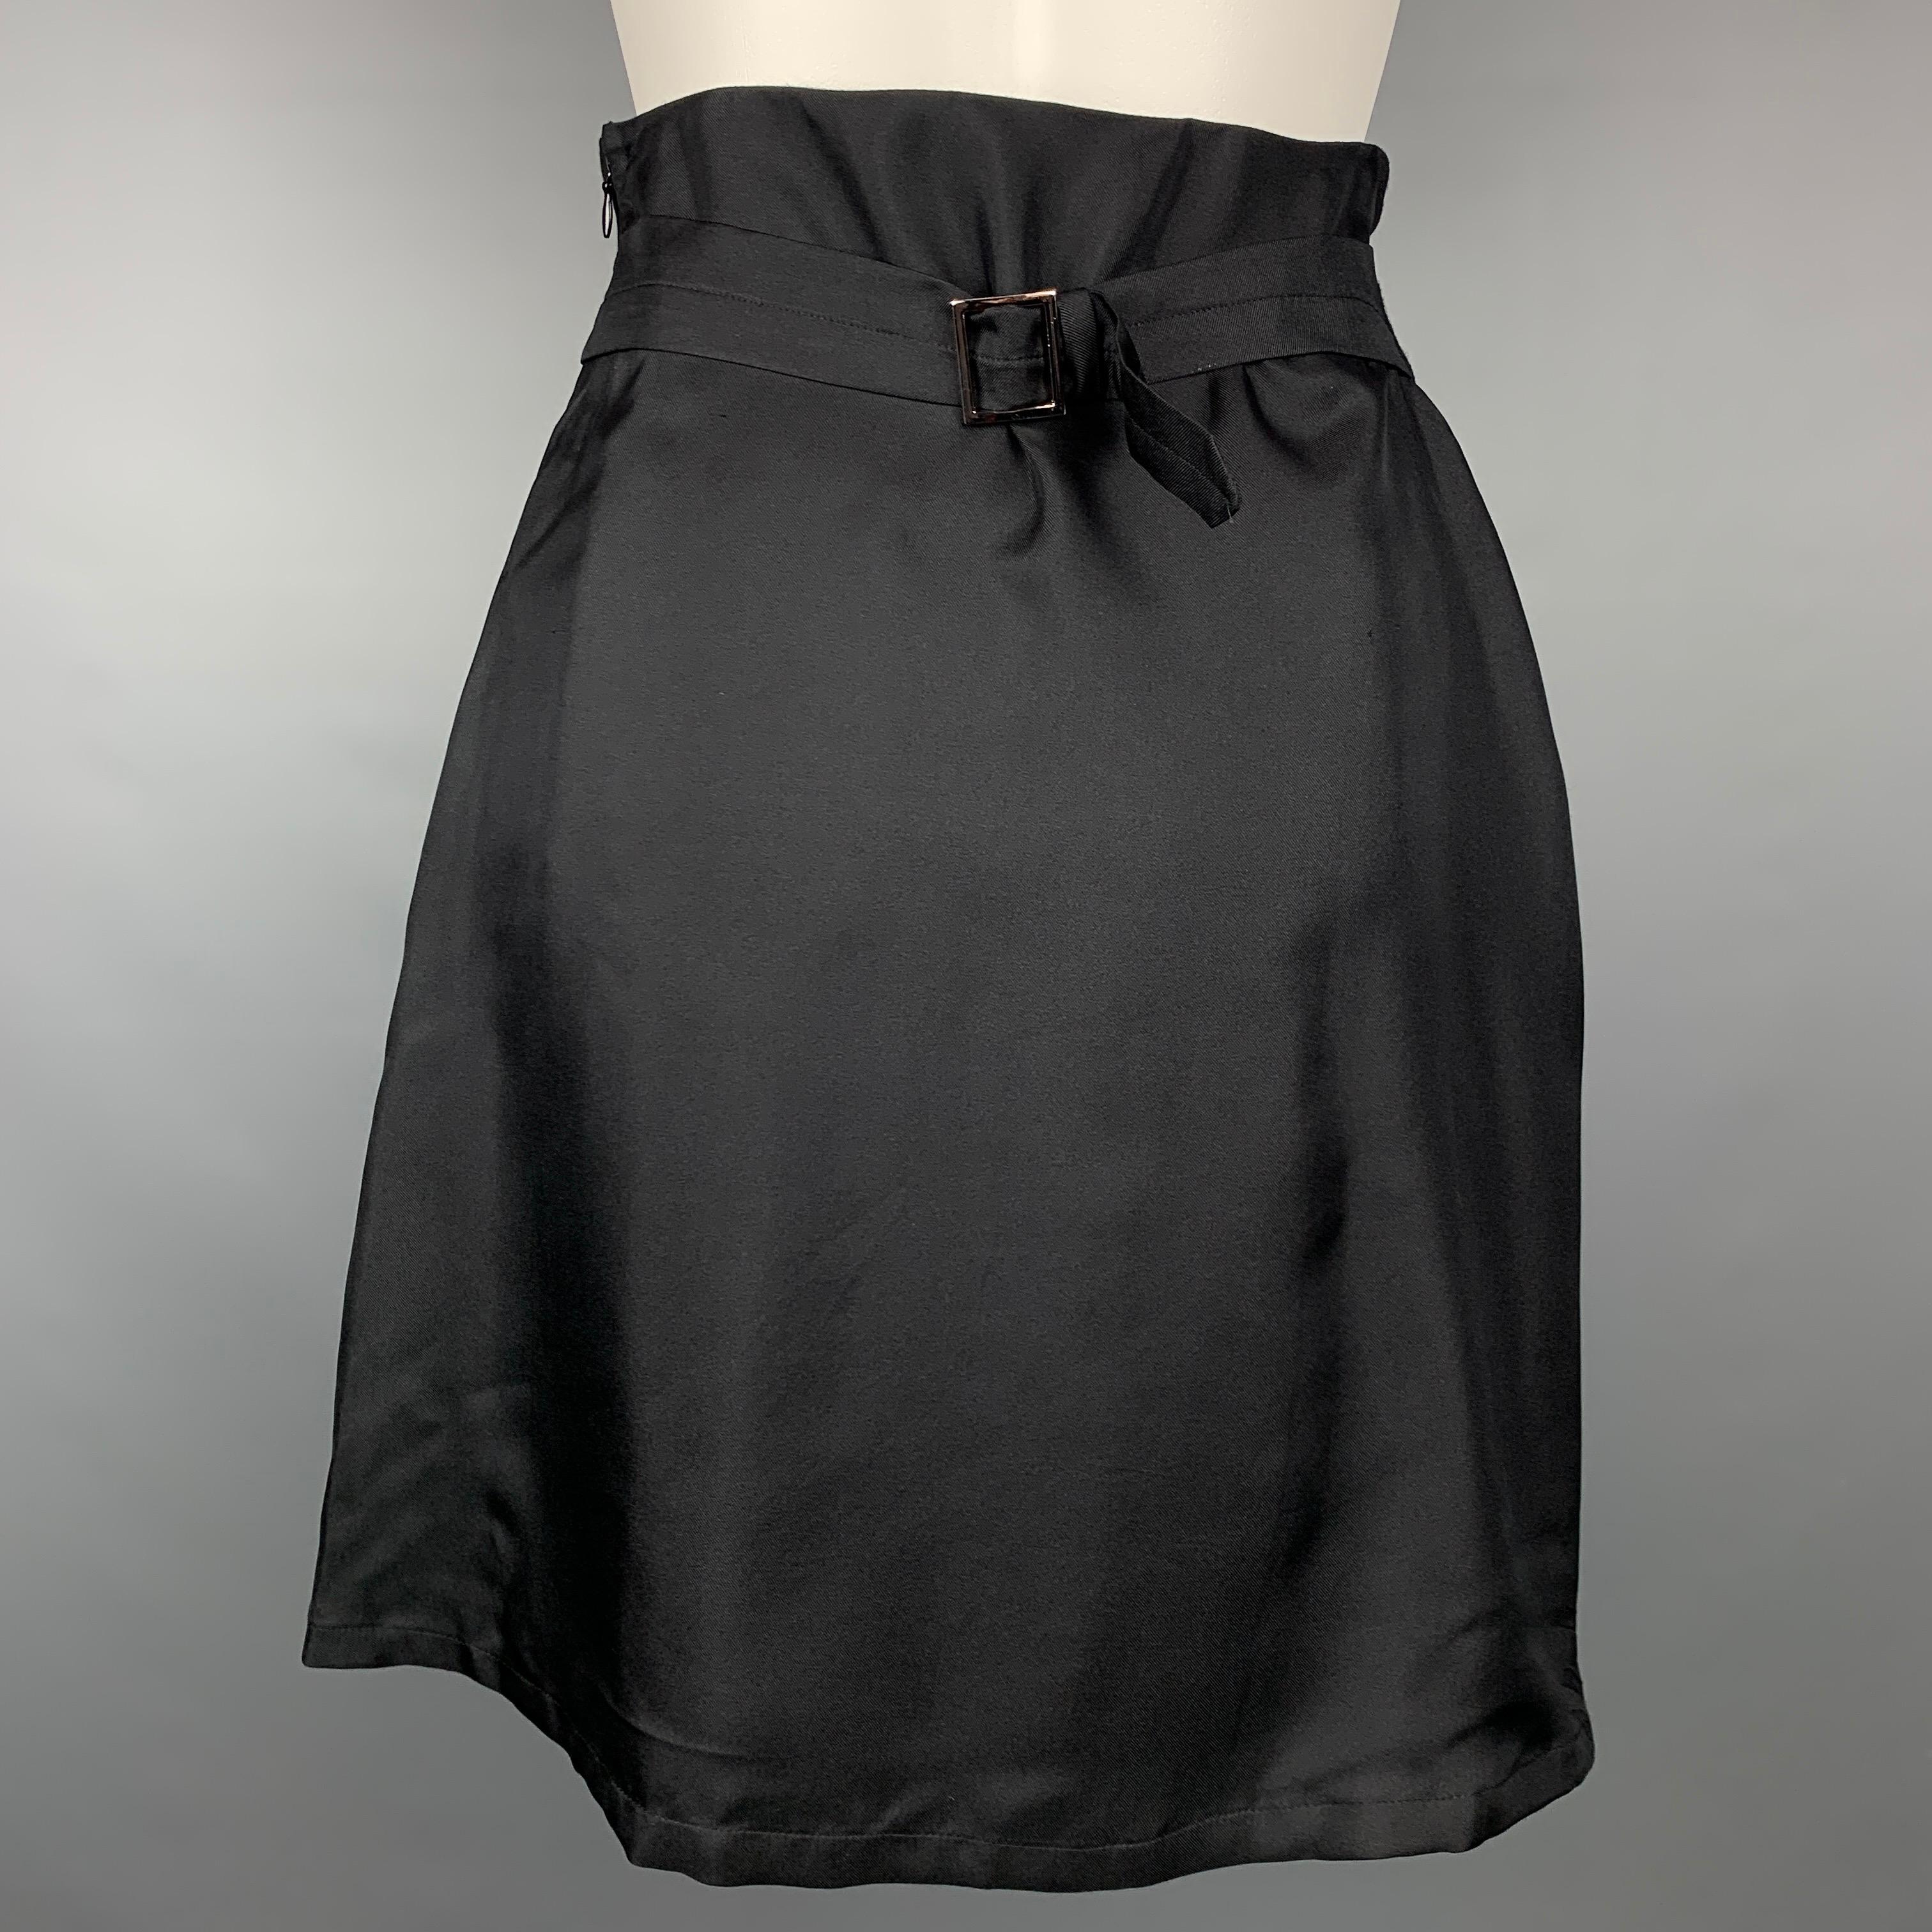 Vintage JEAN PAUL GAULTIER Size 4 Black Polyester / Cotton Skirt Suit 1